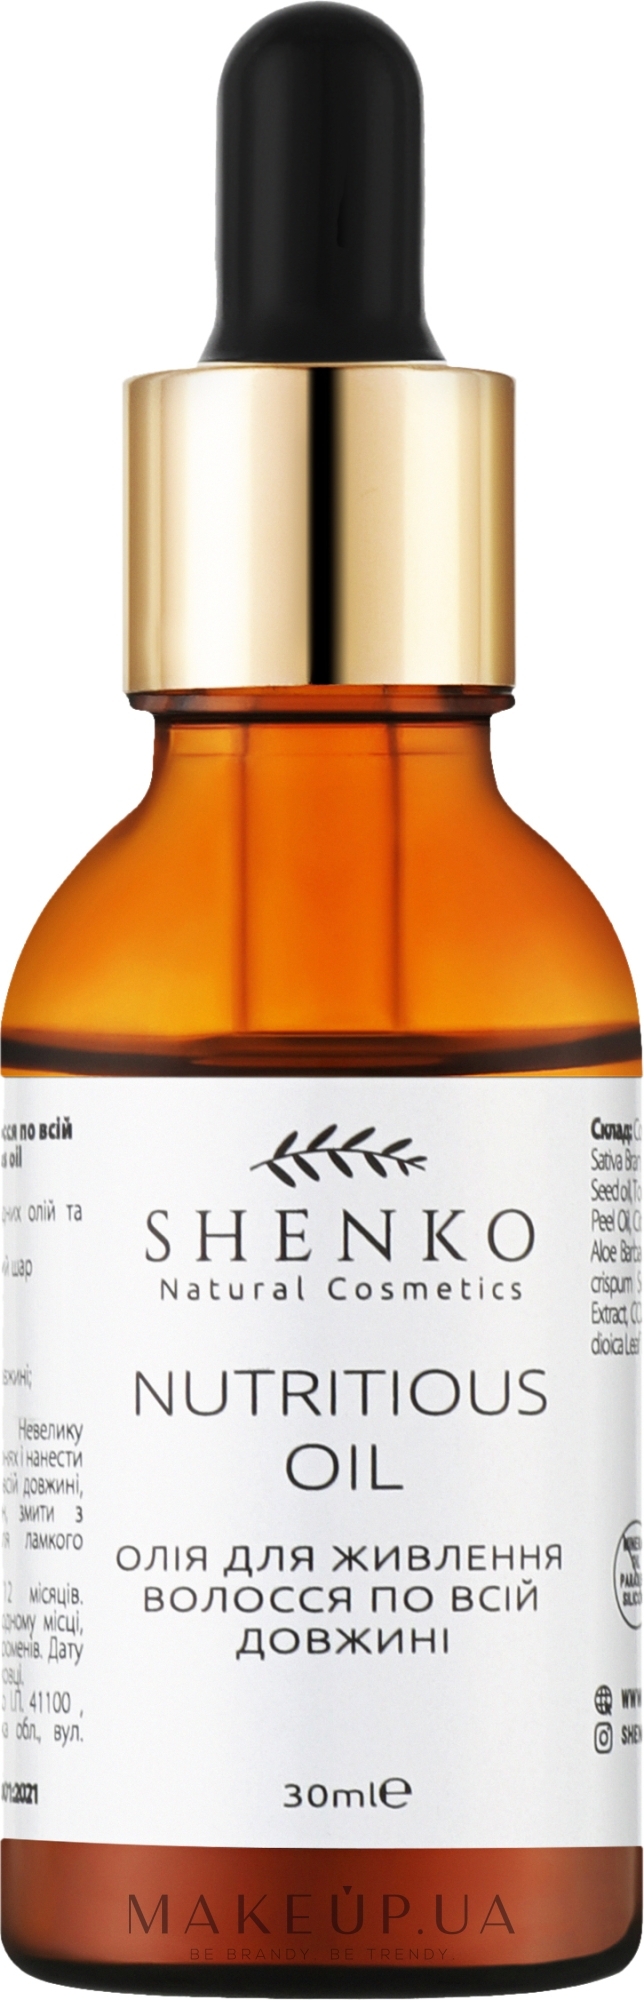 Олія для живлення волосся по всій довжині - Shenko Nutritious oil — фото 30ml